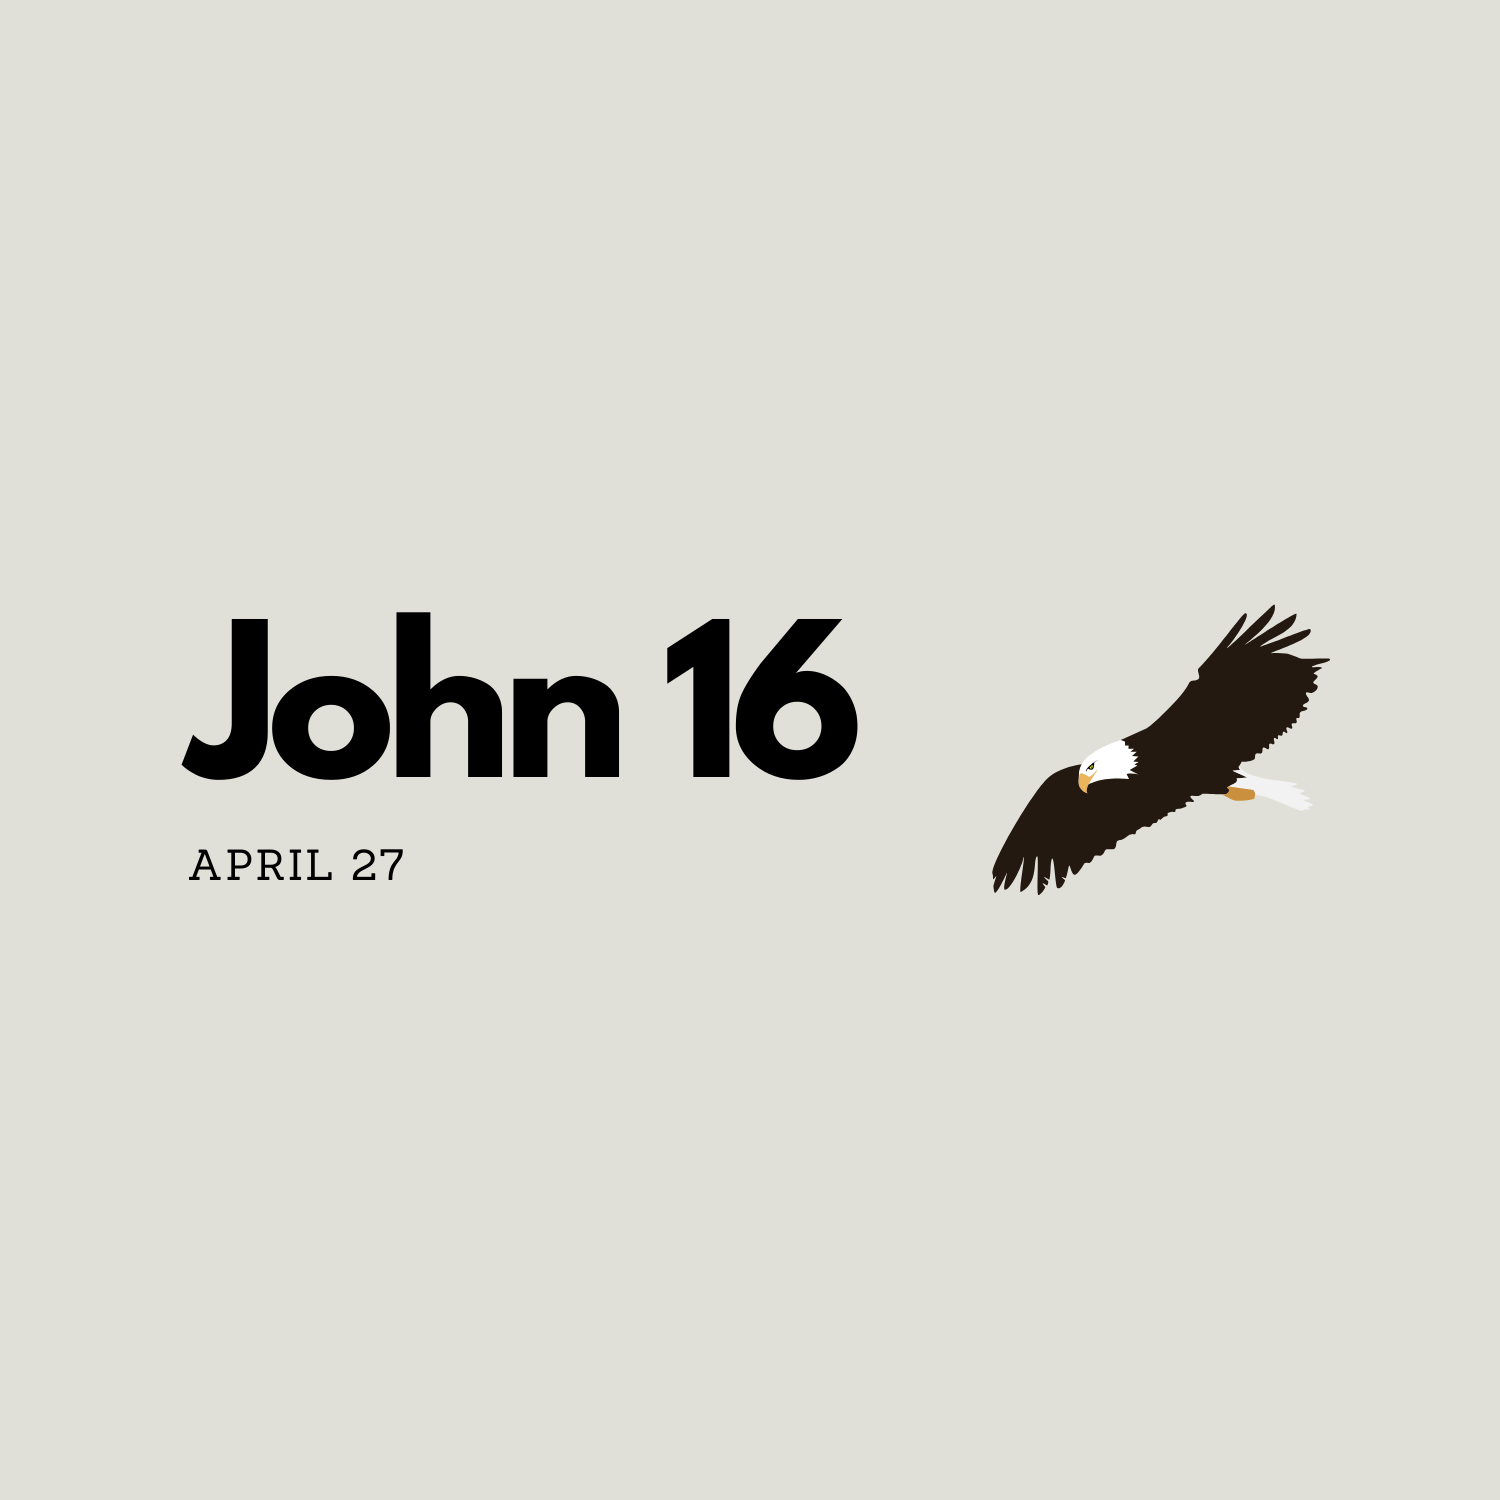 April 27: John 16